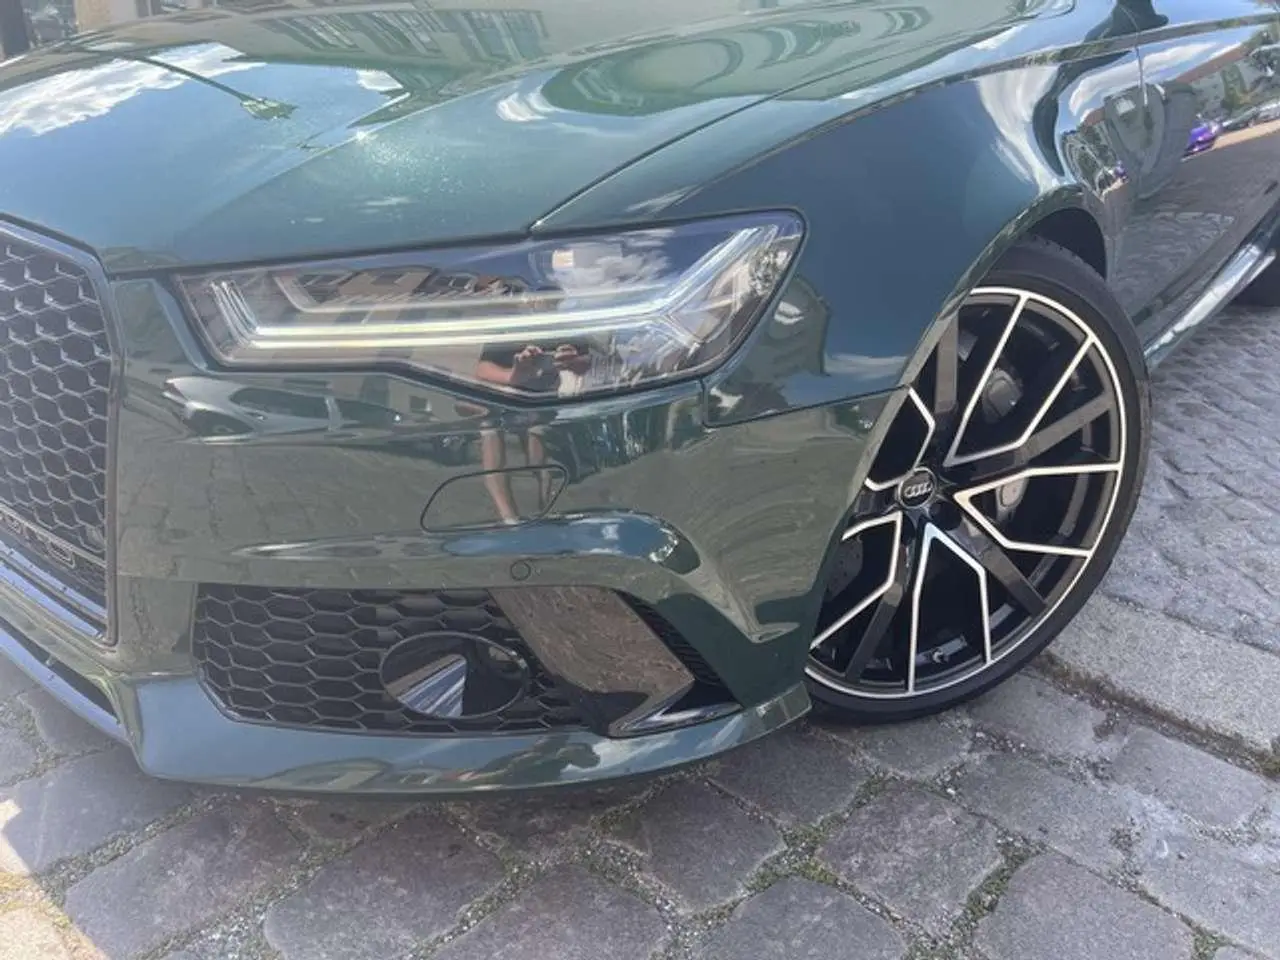 Photo 1 : Audi Rs6 2018 Petrol